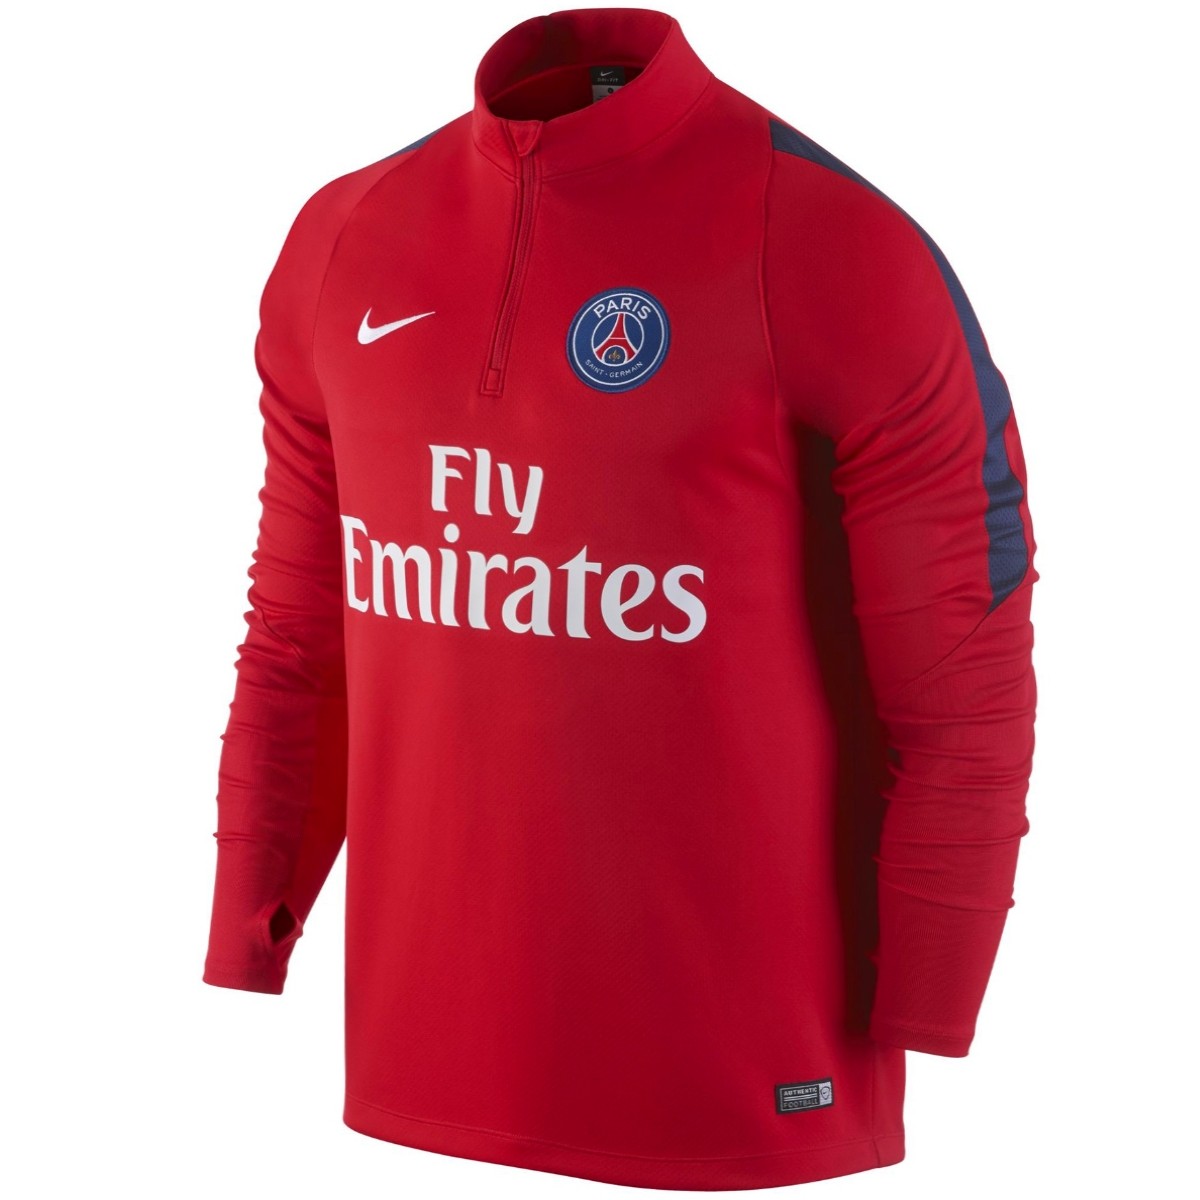 PSG Paris Saint Germain sudadera tecnica 2016 rojo - Nike SportingPlus.net